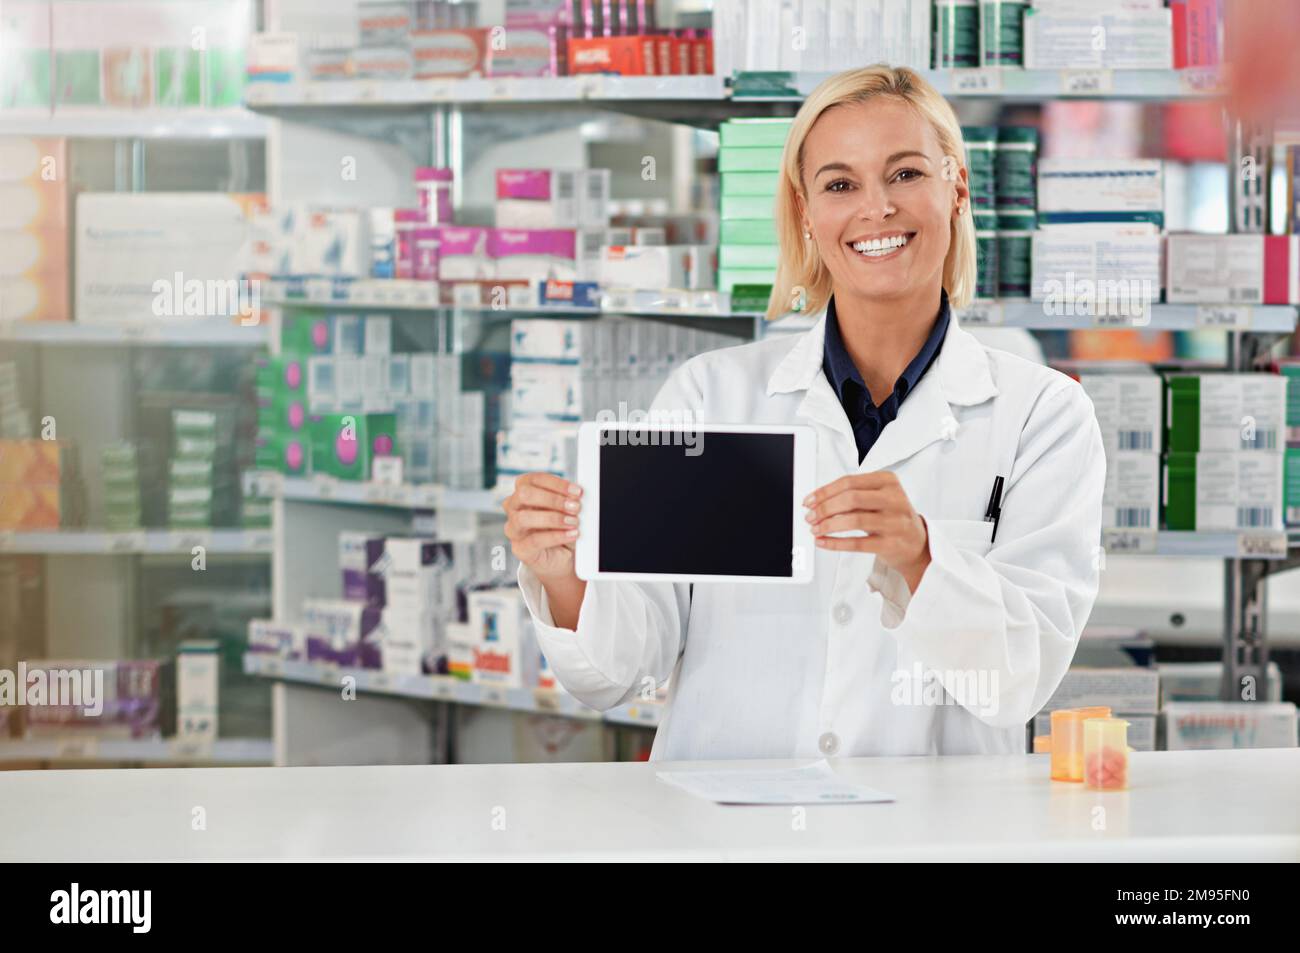 Tablet-Bildschirm, Apotheke und Apothekerin mit Modell für medizinische Software, E-Commerce und Online-Medizin. Digitale Technologie, Einzelhandelsanwendung Stockfoto